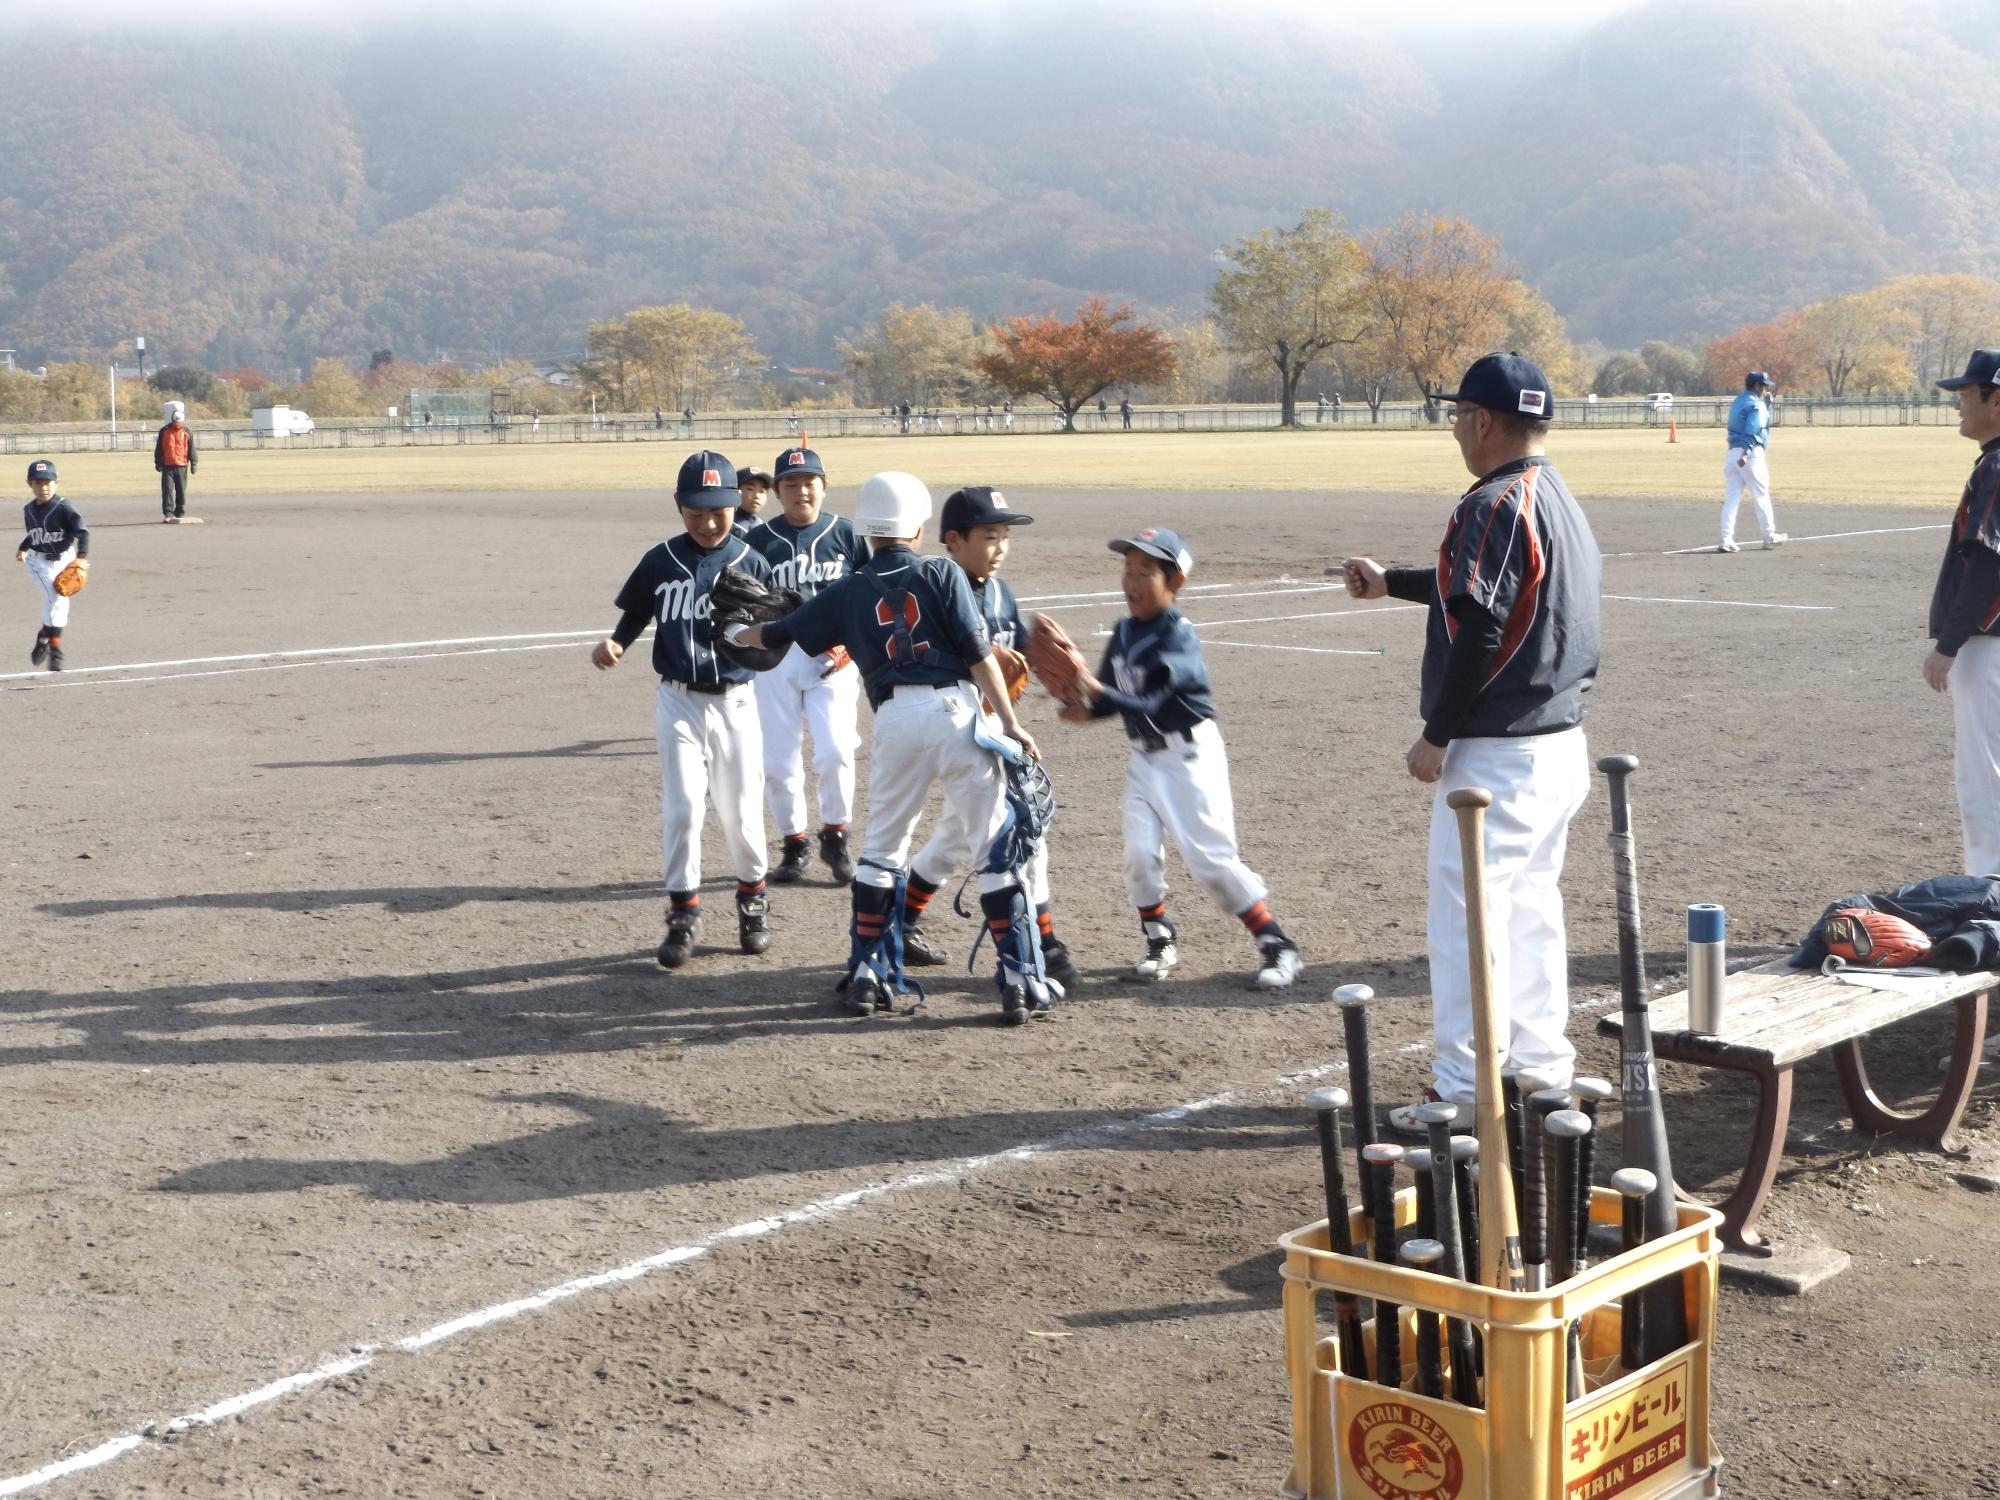 野球のグラウンド上に集まっている子どもたちと、その横で指導している監督の男性の写真